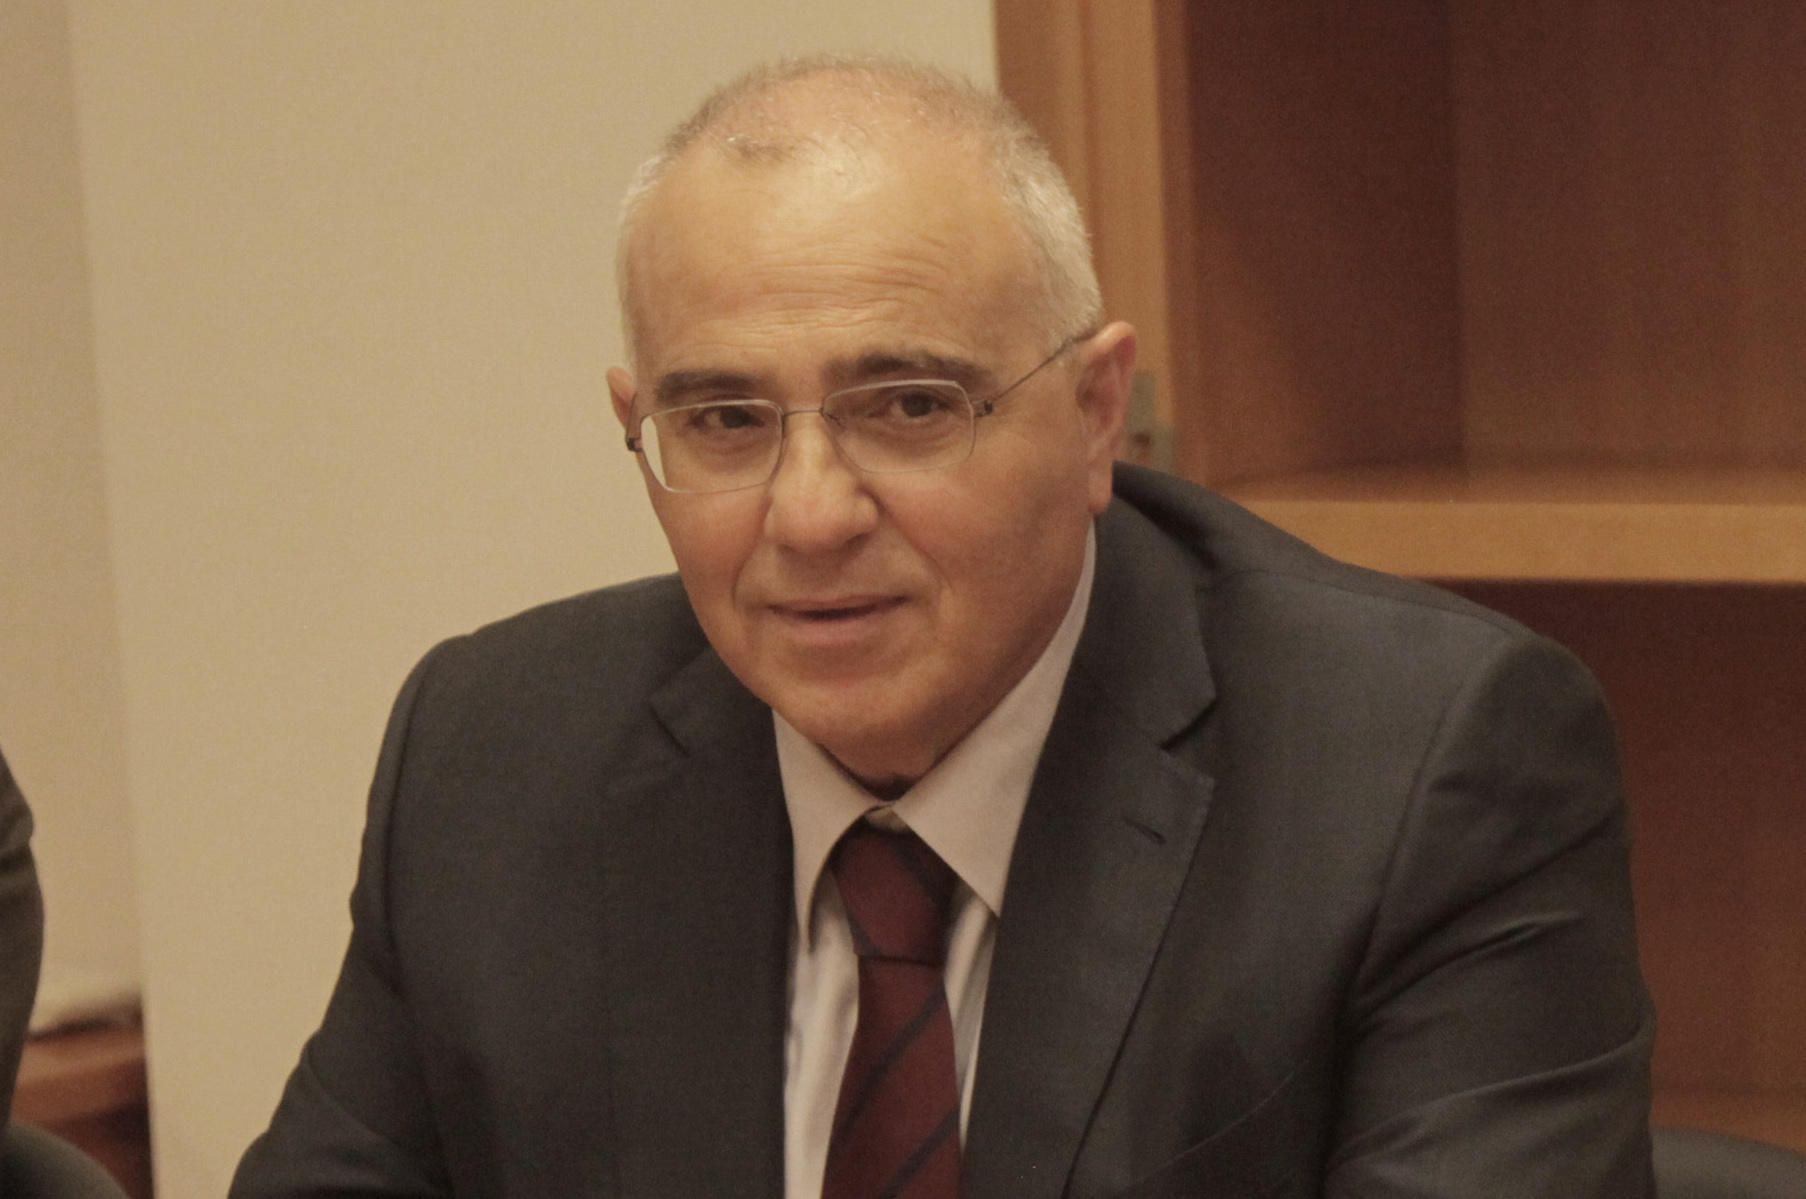 Νίκος Καραμούζης. Ετών 66. Πρόεδρος Eurobank